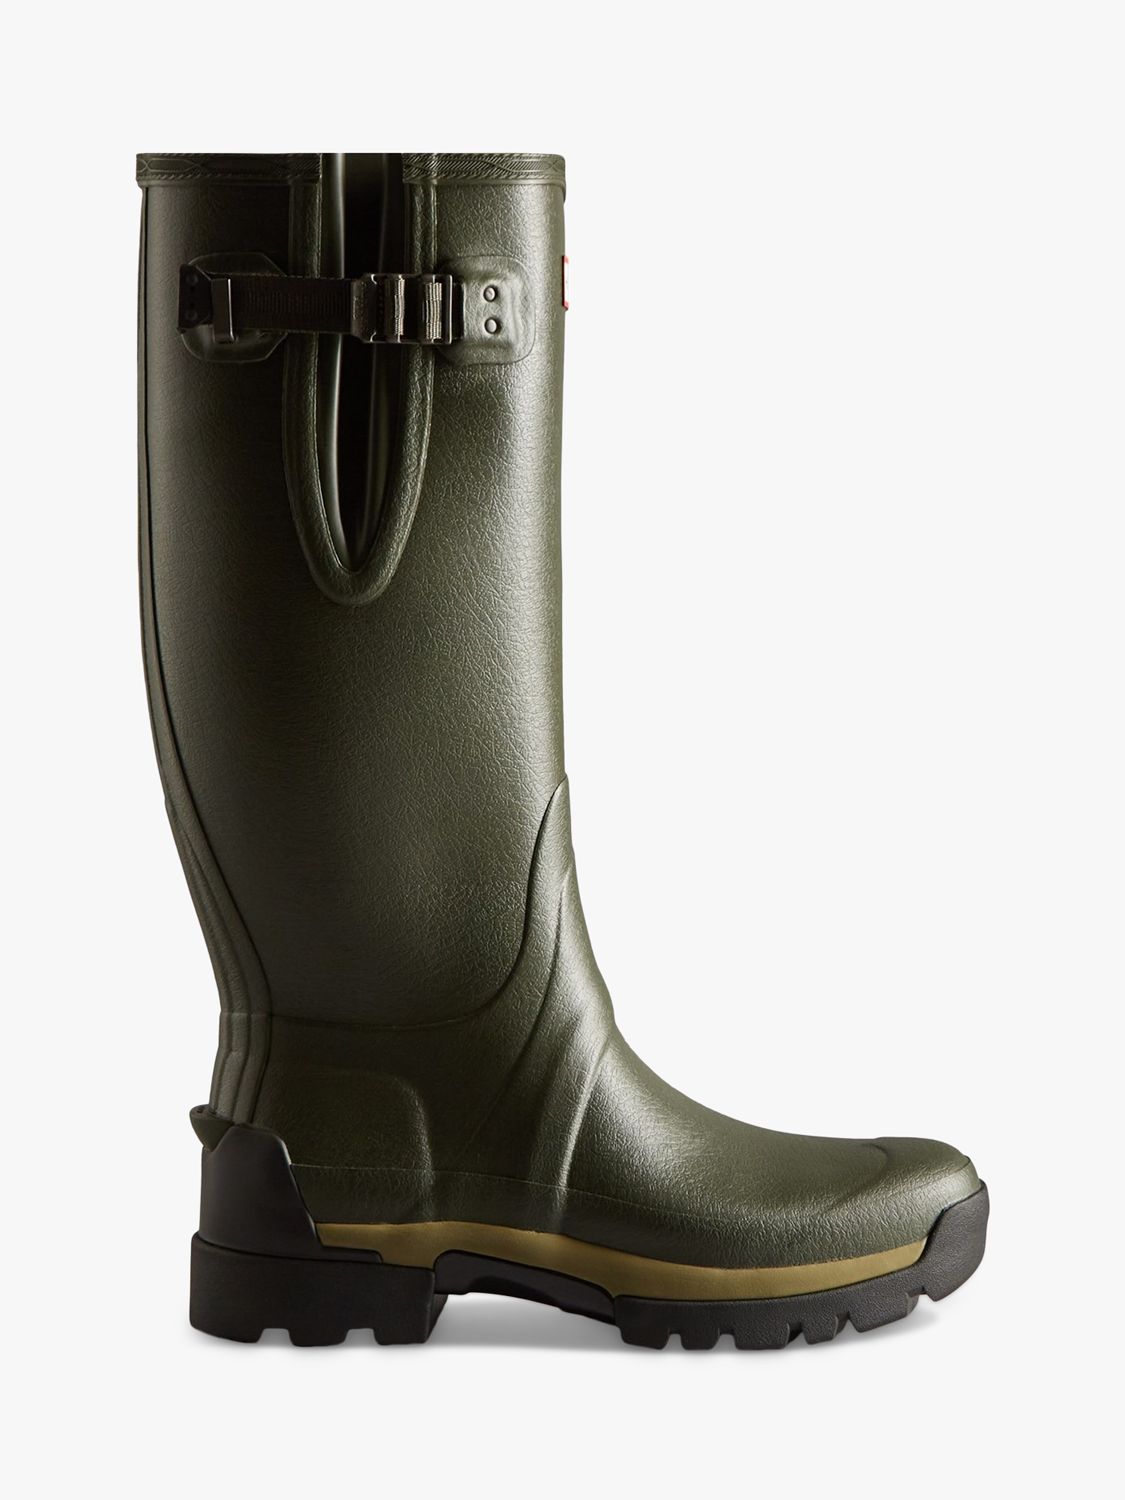 Hunter Men's Balmoral Side Adjustable Wellington Boots, Dark Olive, 7